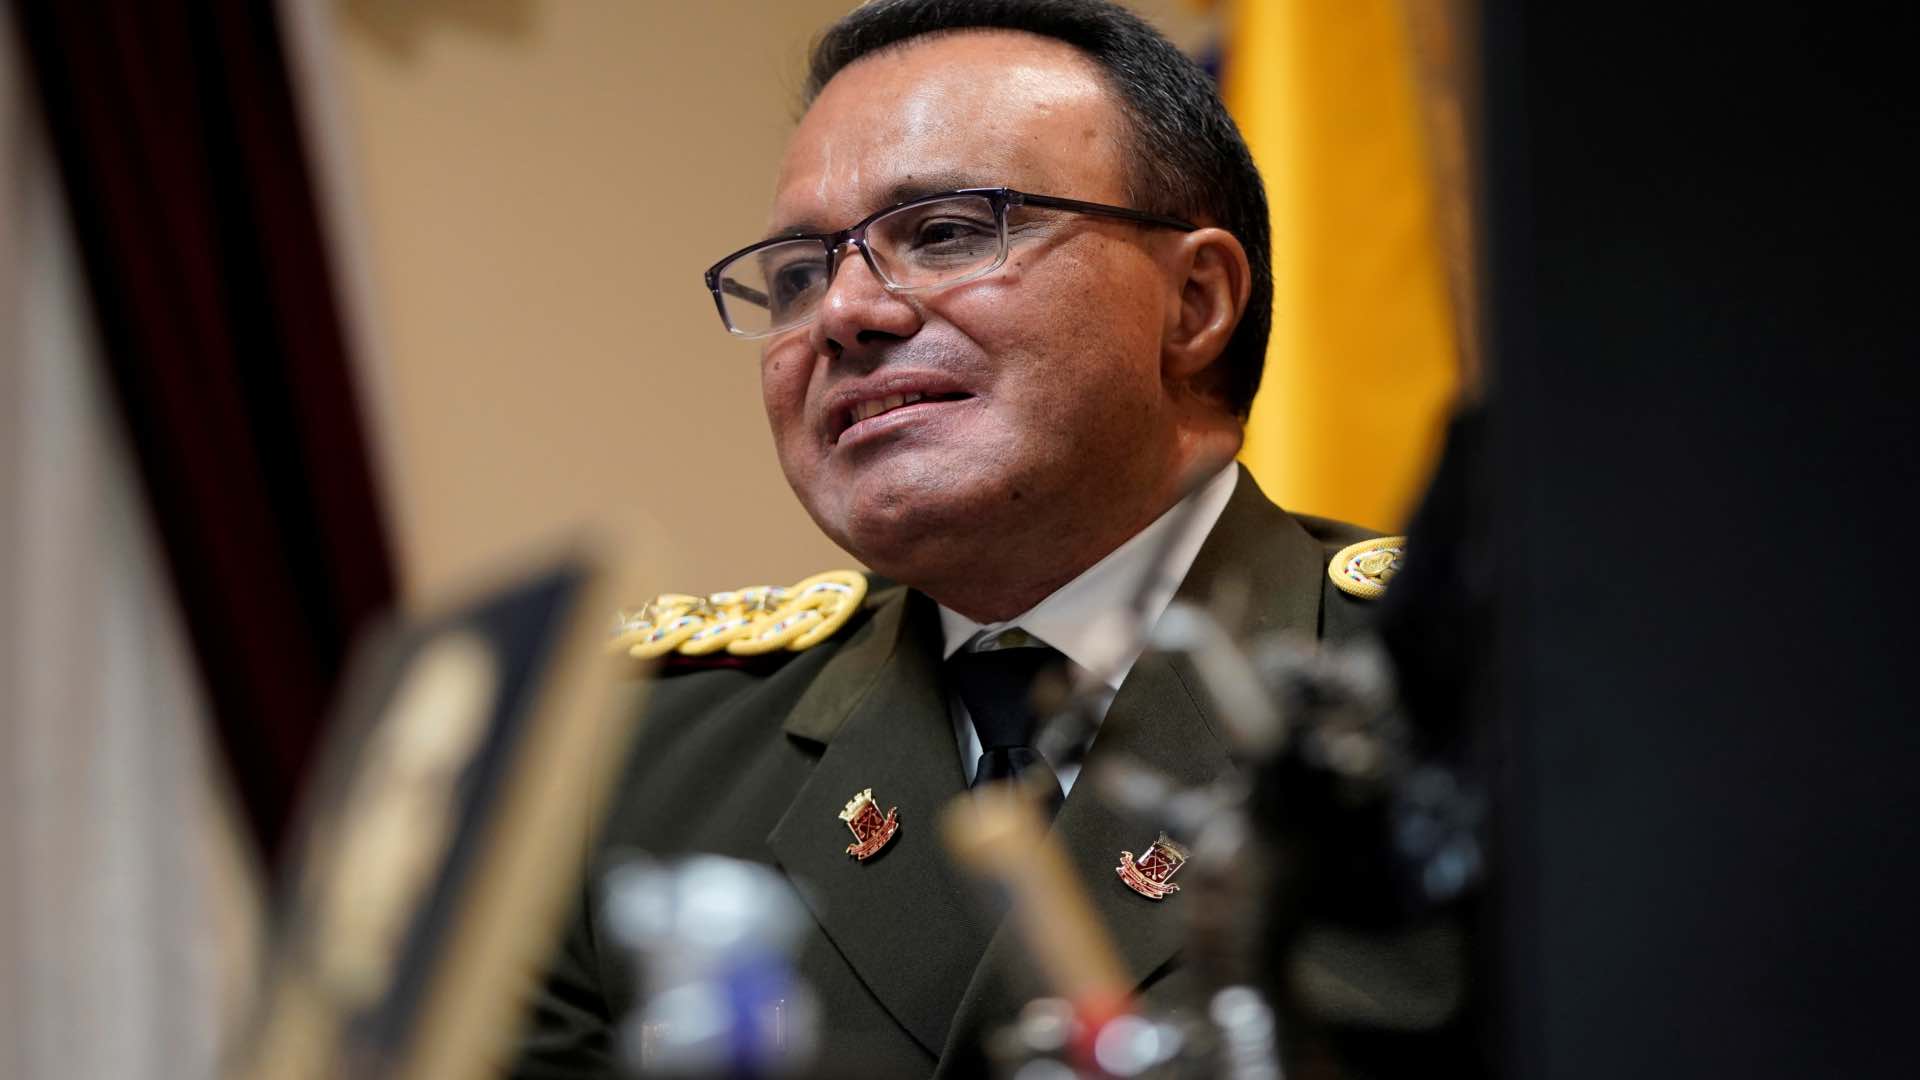 El agregado militar de la Embajada de Venezuela en Washington desconoce a Maduro